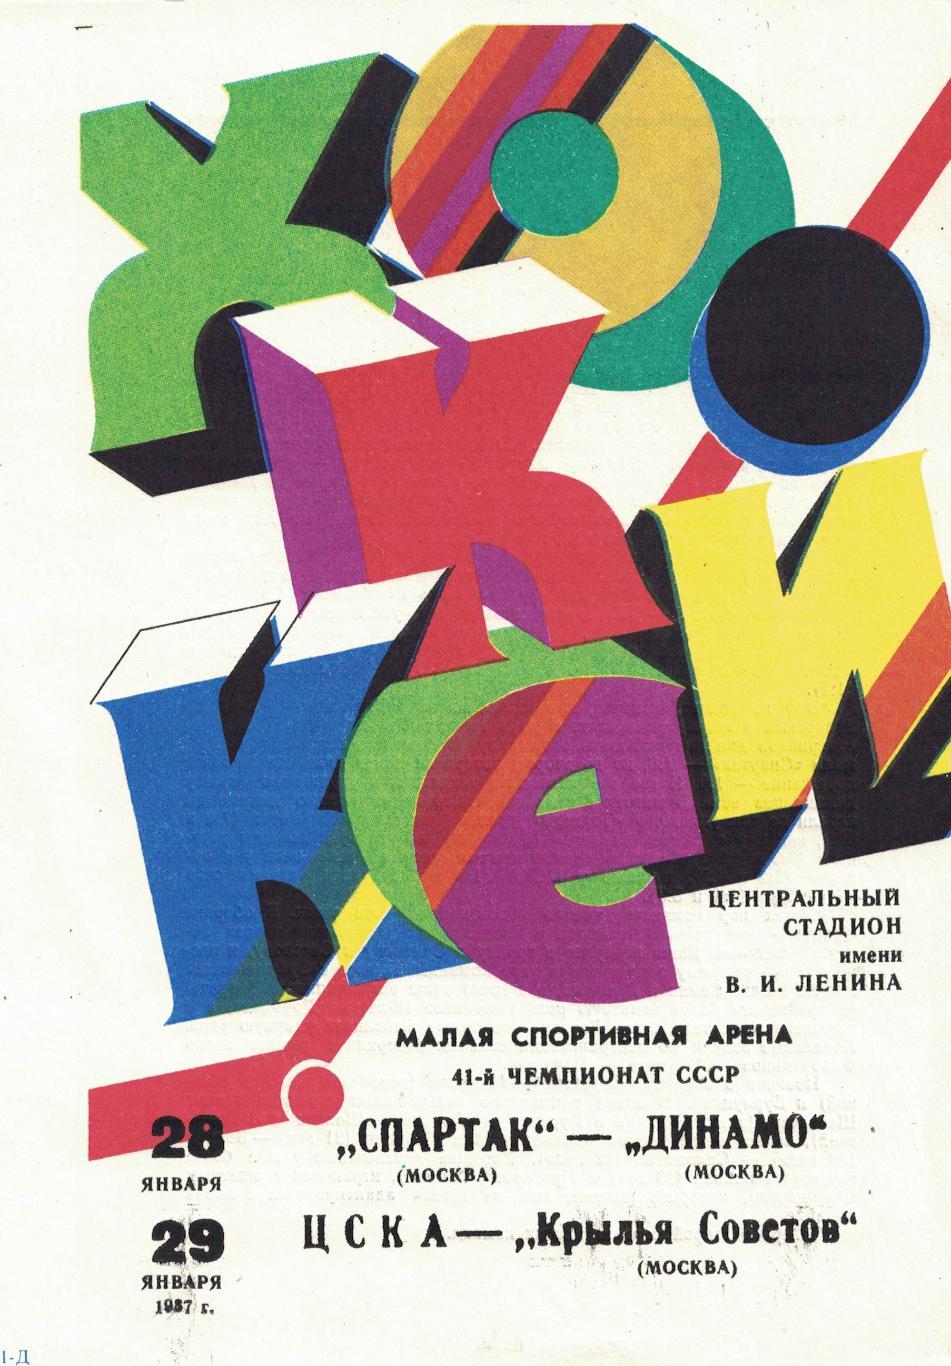 Спартак Москва - Динамо Москва, ЦСКА - Крылья Советов Москва 28 и 29.01.1987.